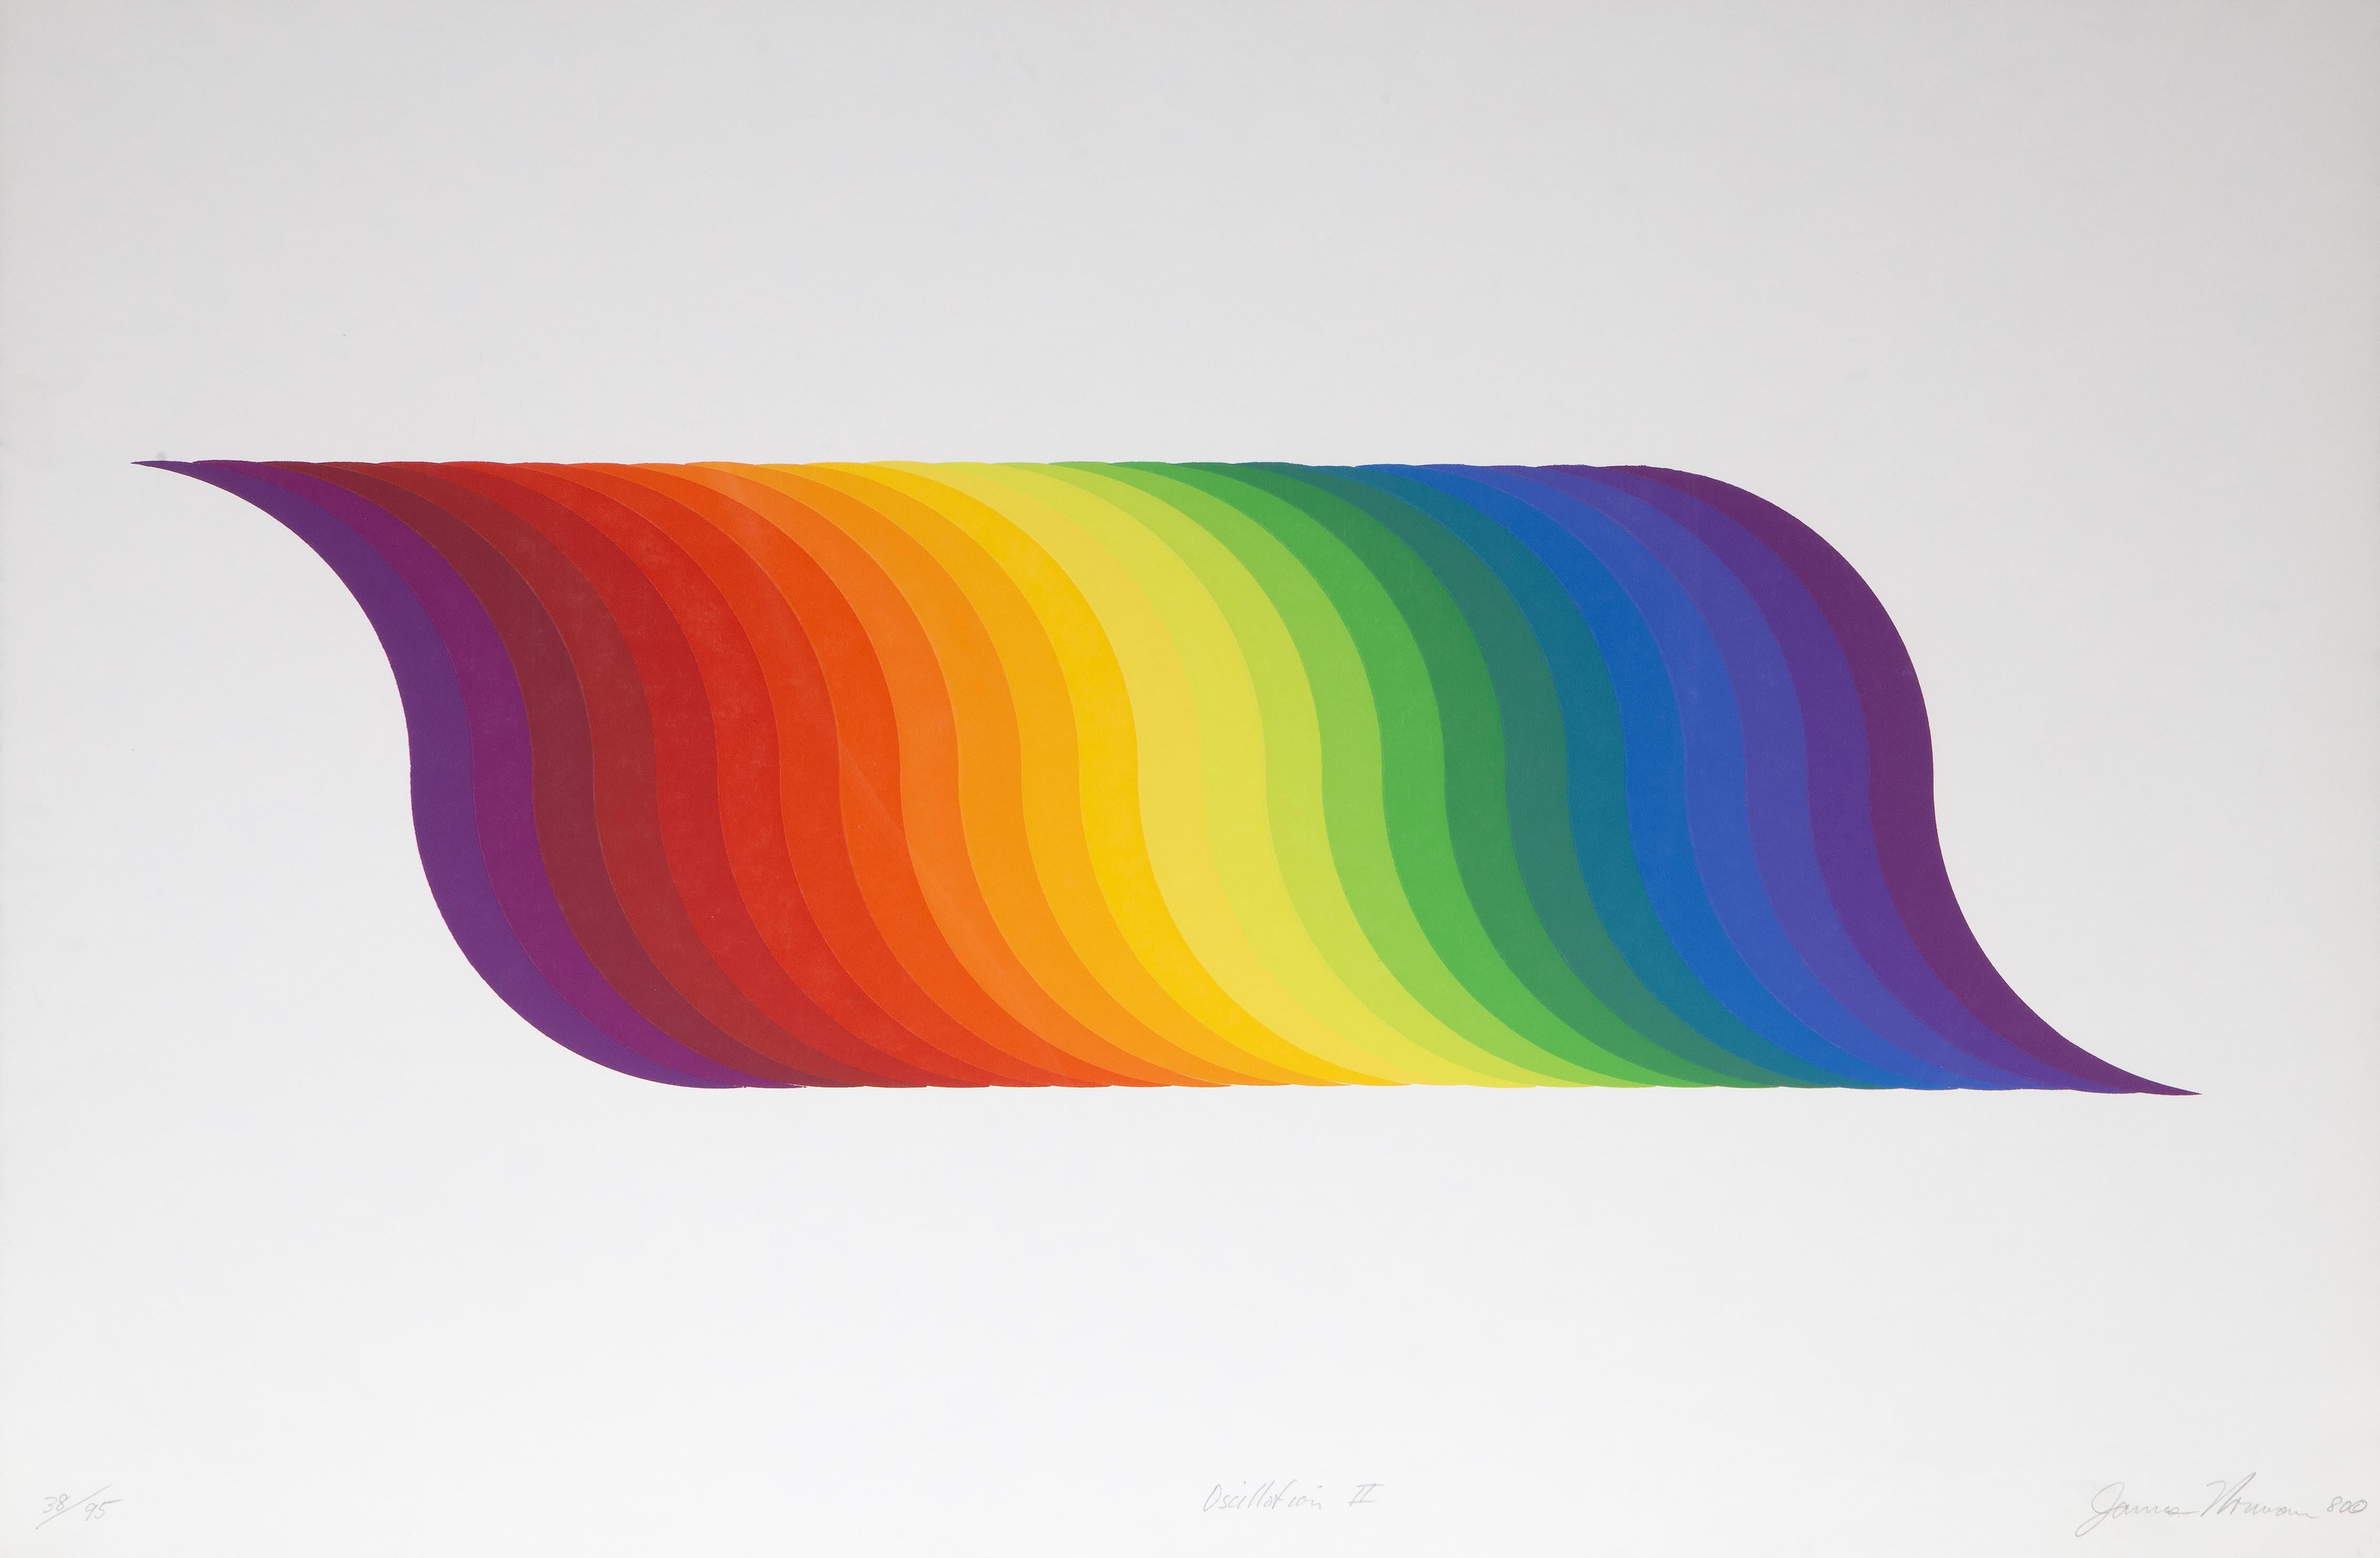 Künstler: James Norman, Amerikaner (1927 - 2011)
Titel: Oszillation II
Jahr: 1980
Medium: Siebdruck, signiert und nummeriert mit Bleistift
Auflage: 38/95
Bildgröße: 10 x 32 Zoll
Größe: 25 x 38 Zoll (63,5 x 96,52 cm)